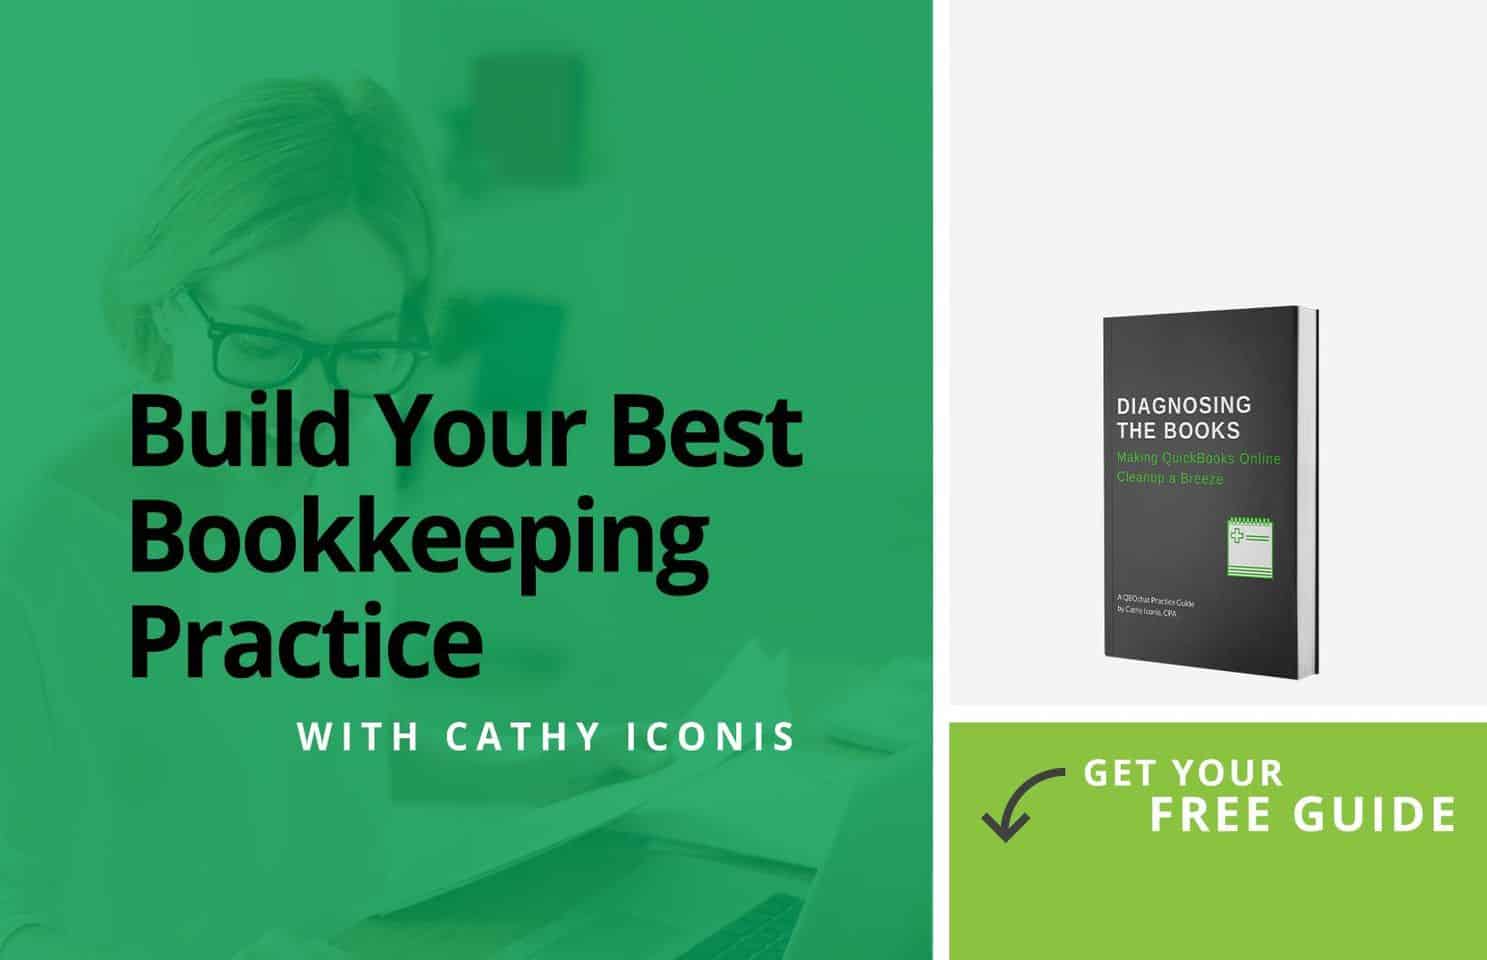 Building Your Best Bookkeeping Practice